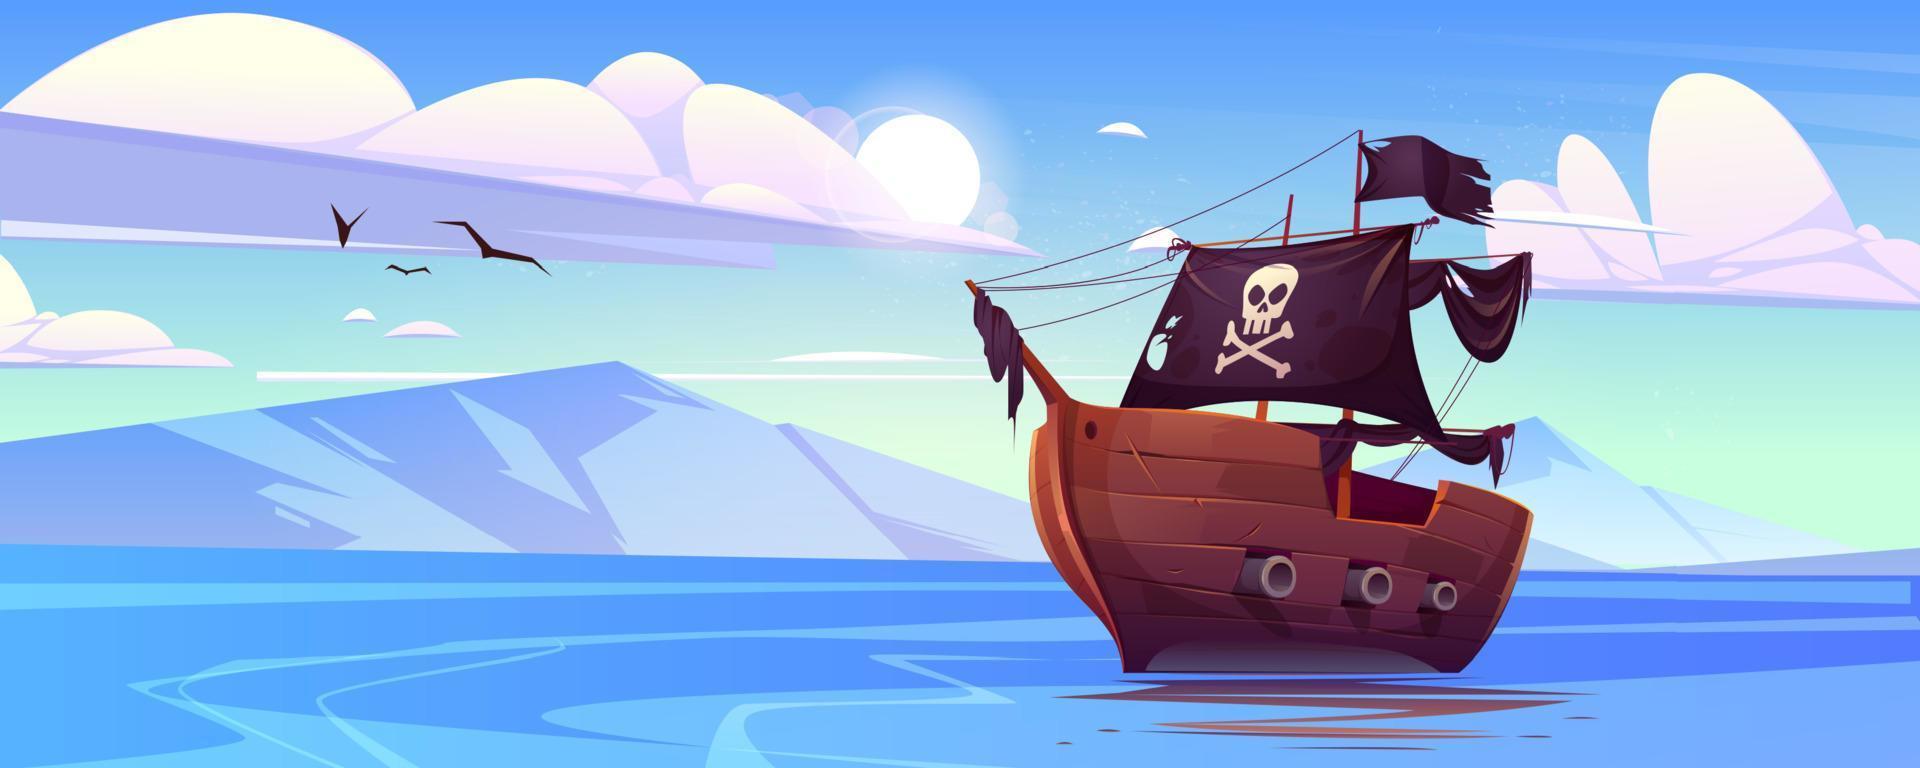 barco pirata con velas negras y bandera con calavera vector